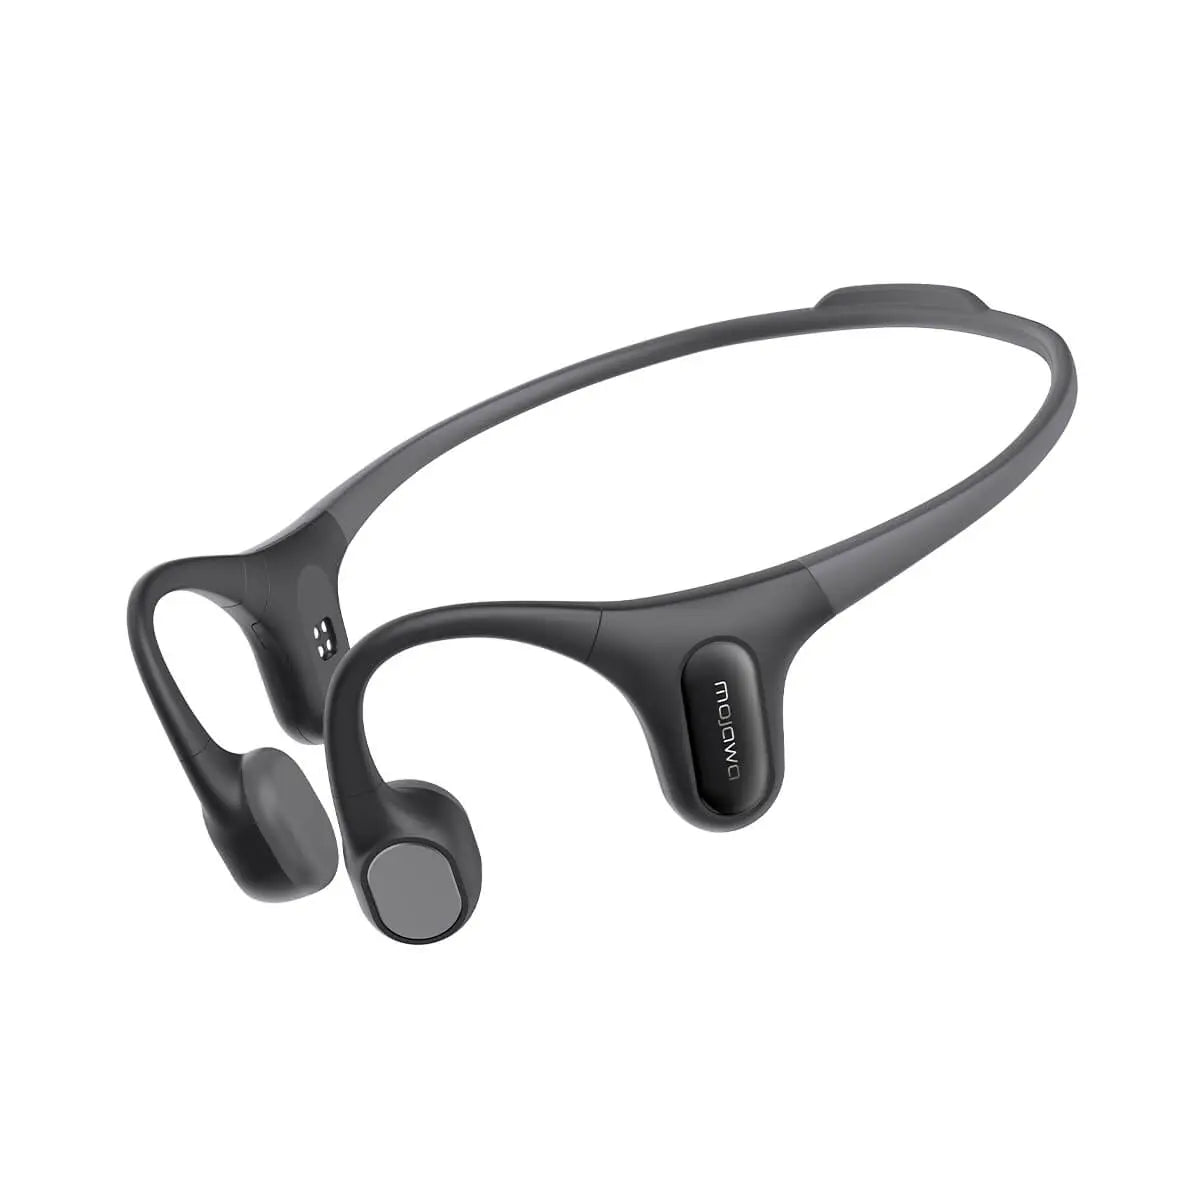 MOJAWA Run Plus Bone Conduction Earphone Black אוזניות אלחוטיות לשחייה וריצה בטכנולוגיית הולכת עצם בצבע שחור